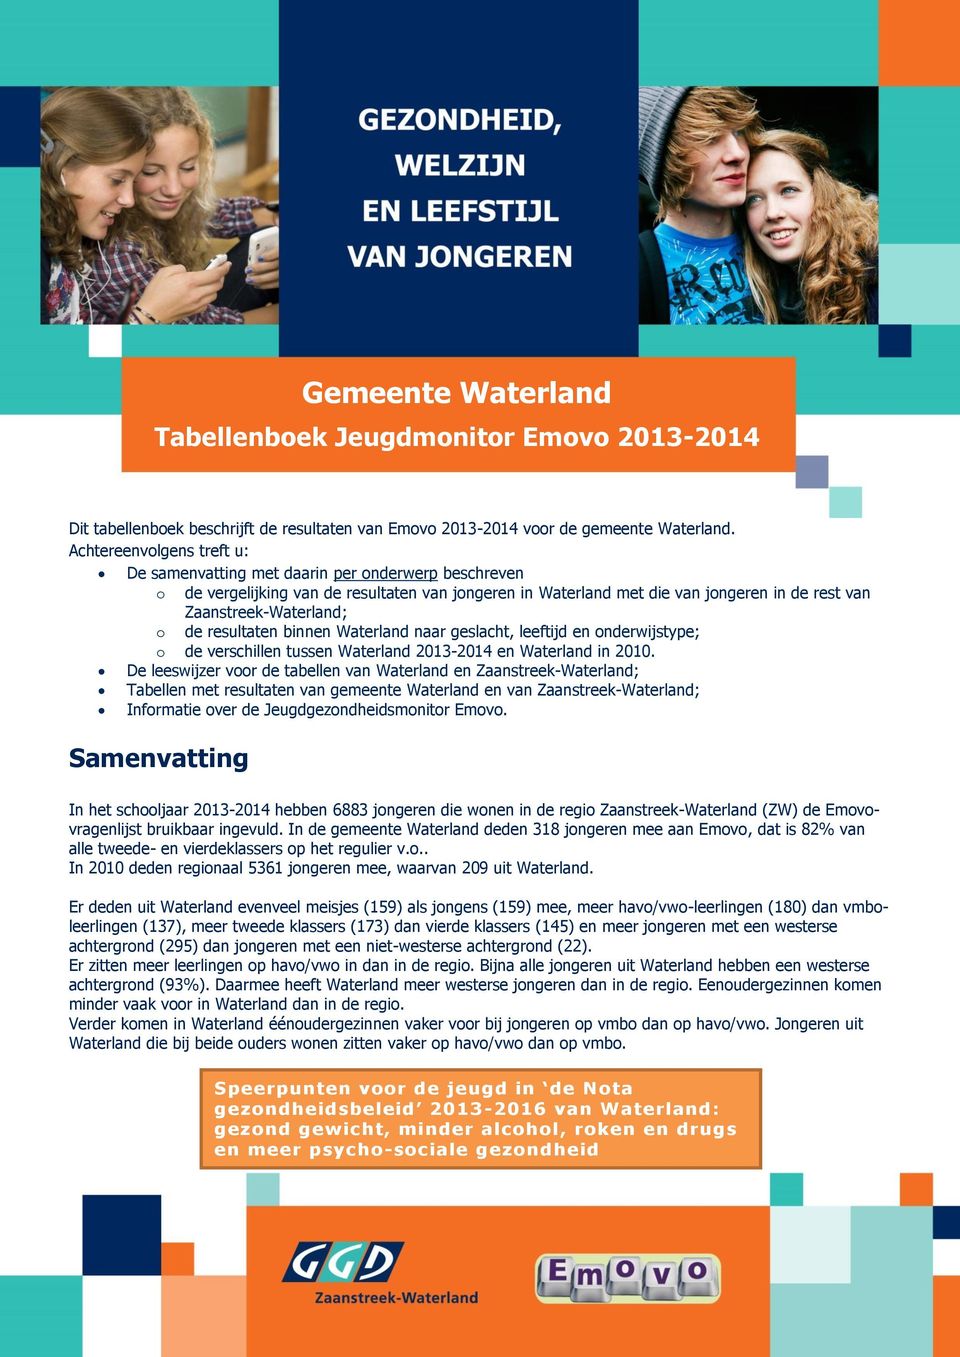 de resultaten binnen Waterland naar geslacht, leeftijd en onderwijstype; o de verschillen tussen Waterland 2013-2014 en Waterland in 2010.